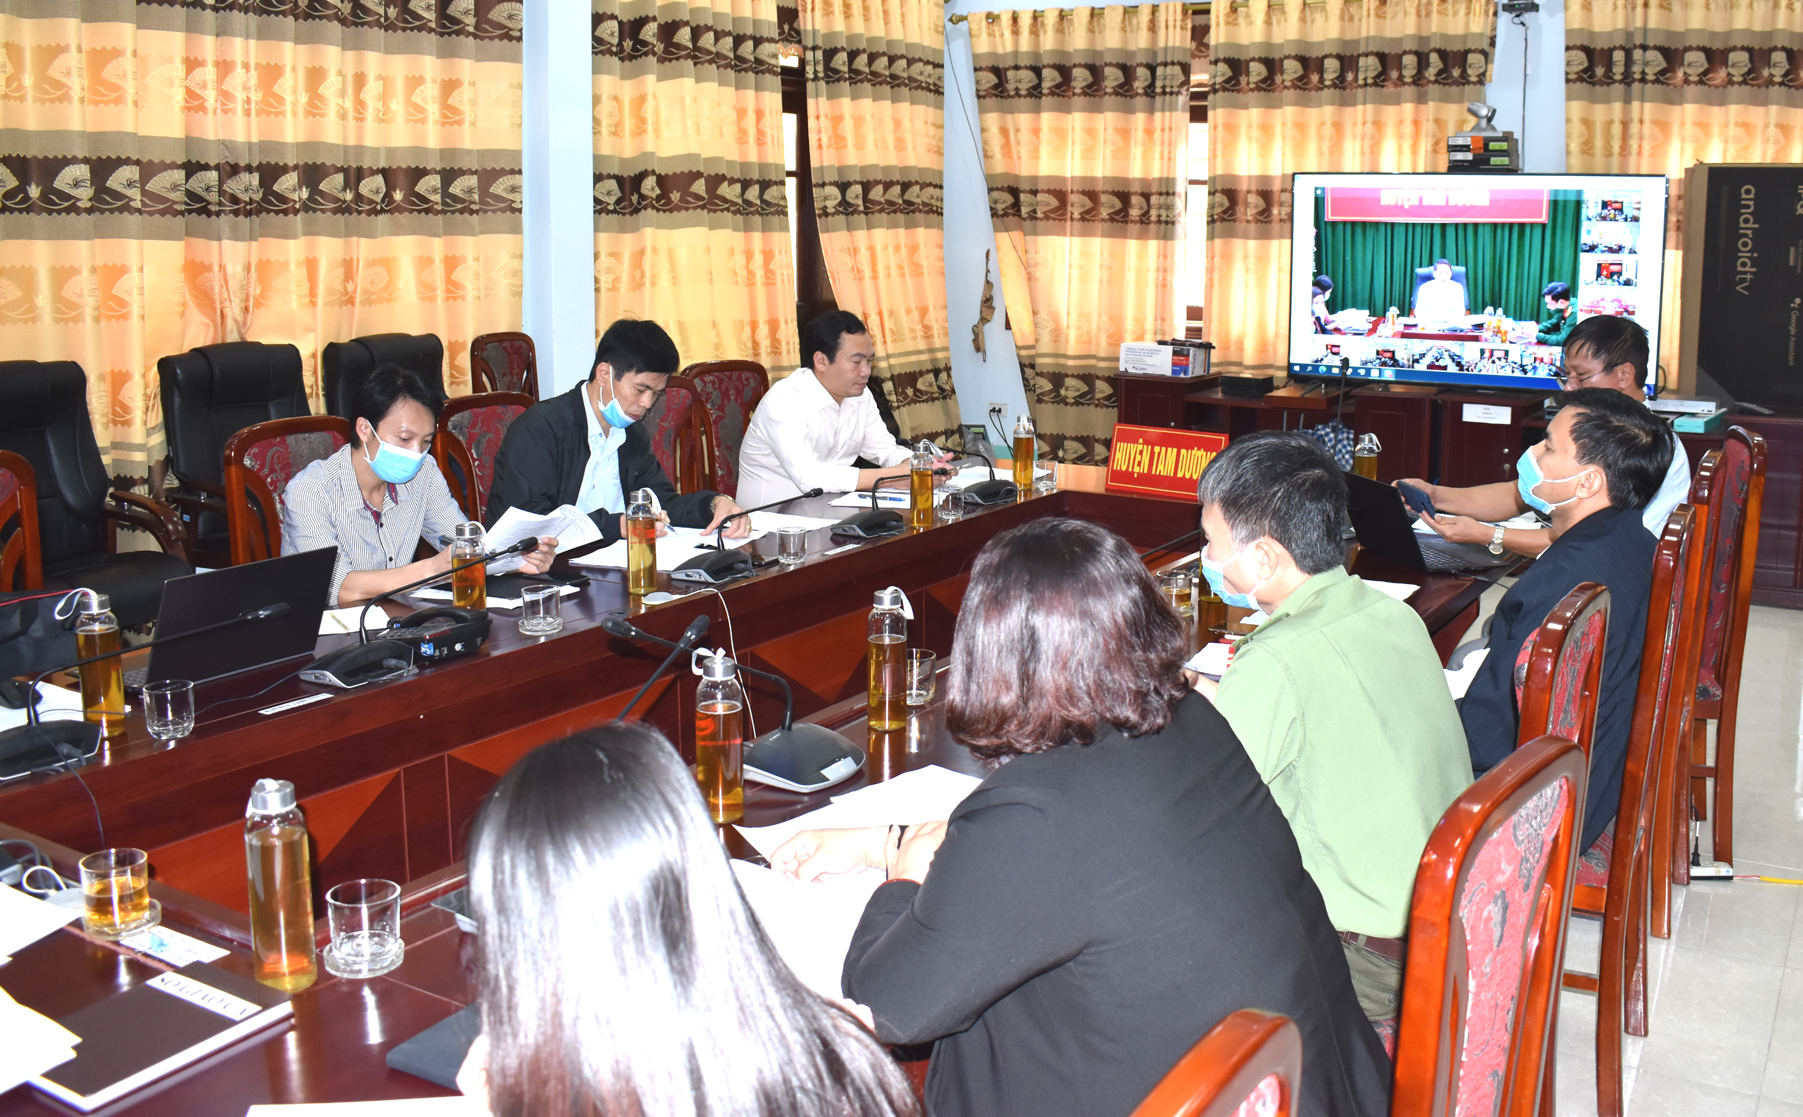 UBND huyện Tam Dương triển khai phần mềm Hội nghị trực tuyến TrueConf.